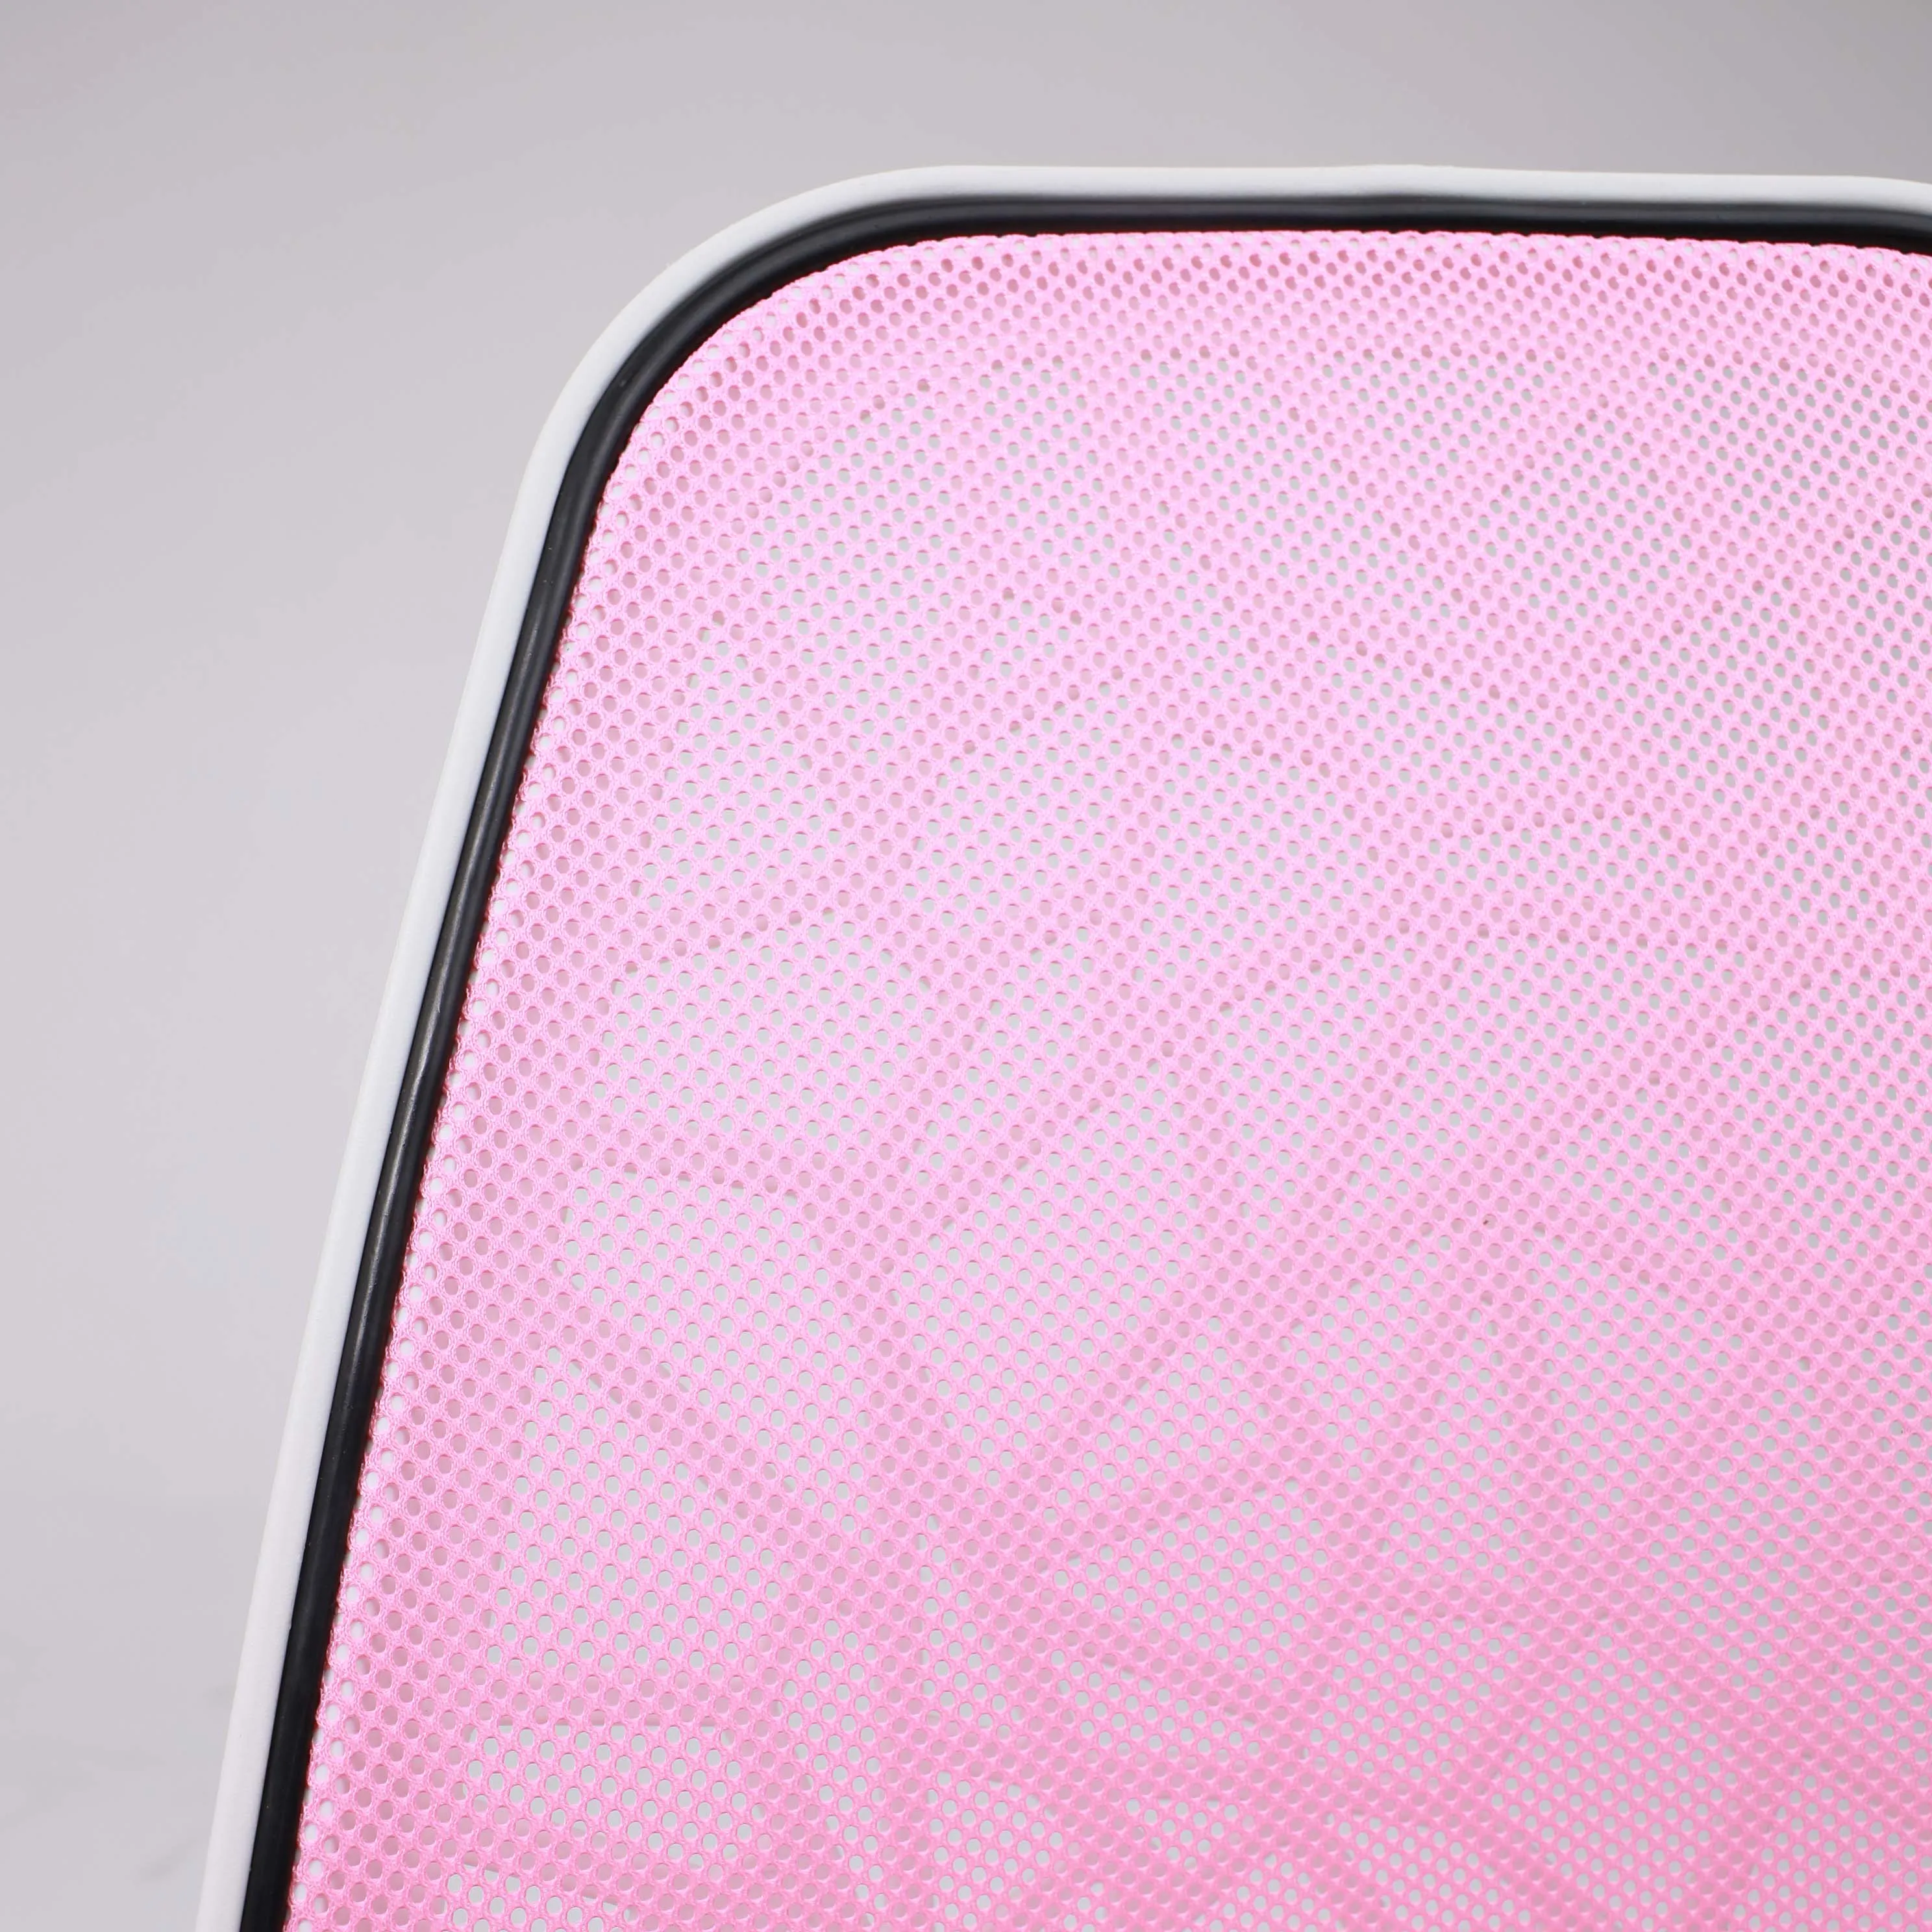 Кресло компьютерное детское CINEMA ткань розовый 102539